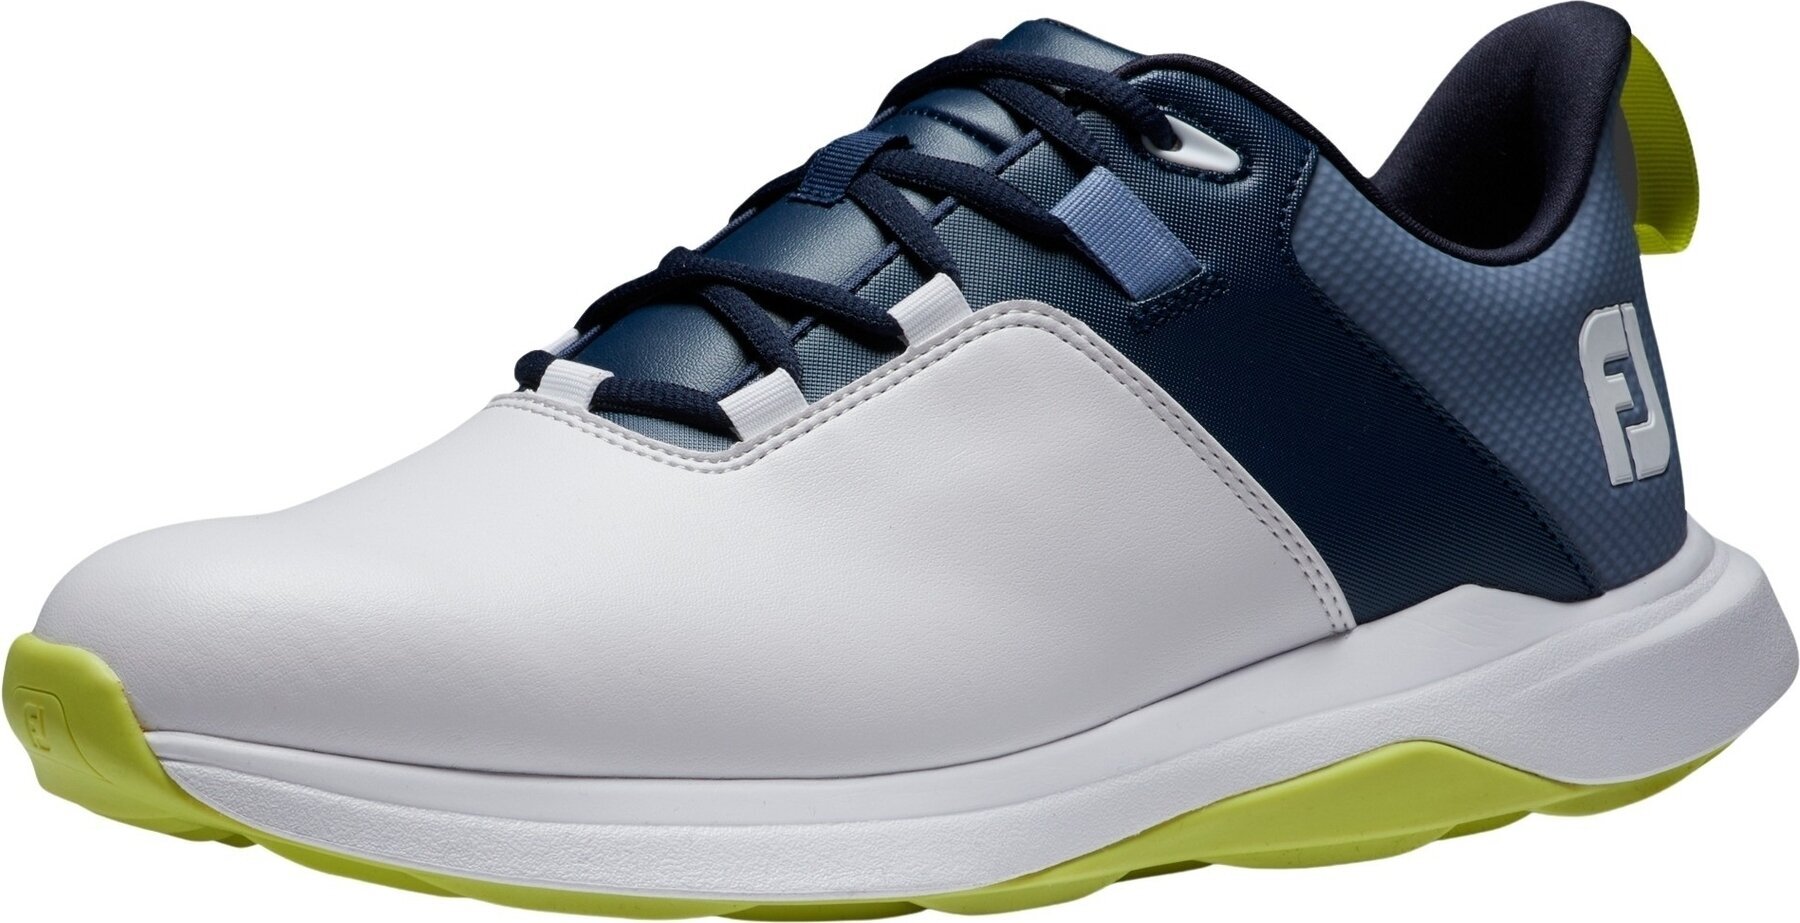 Calzado de golf para hombres Footjoy ProLite Mens Golf Shoes White/Navy/Lime 44,5 Calzado de golf para hombres